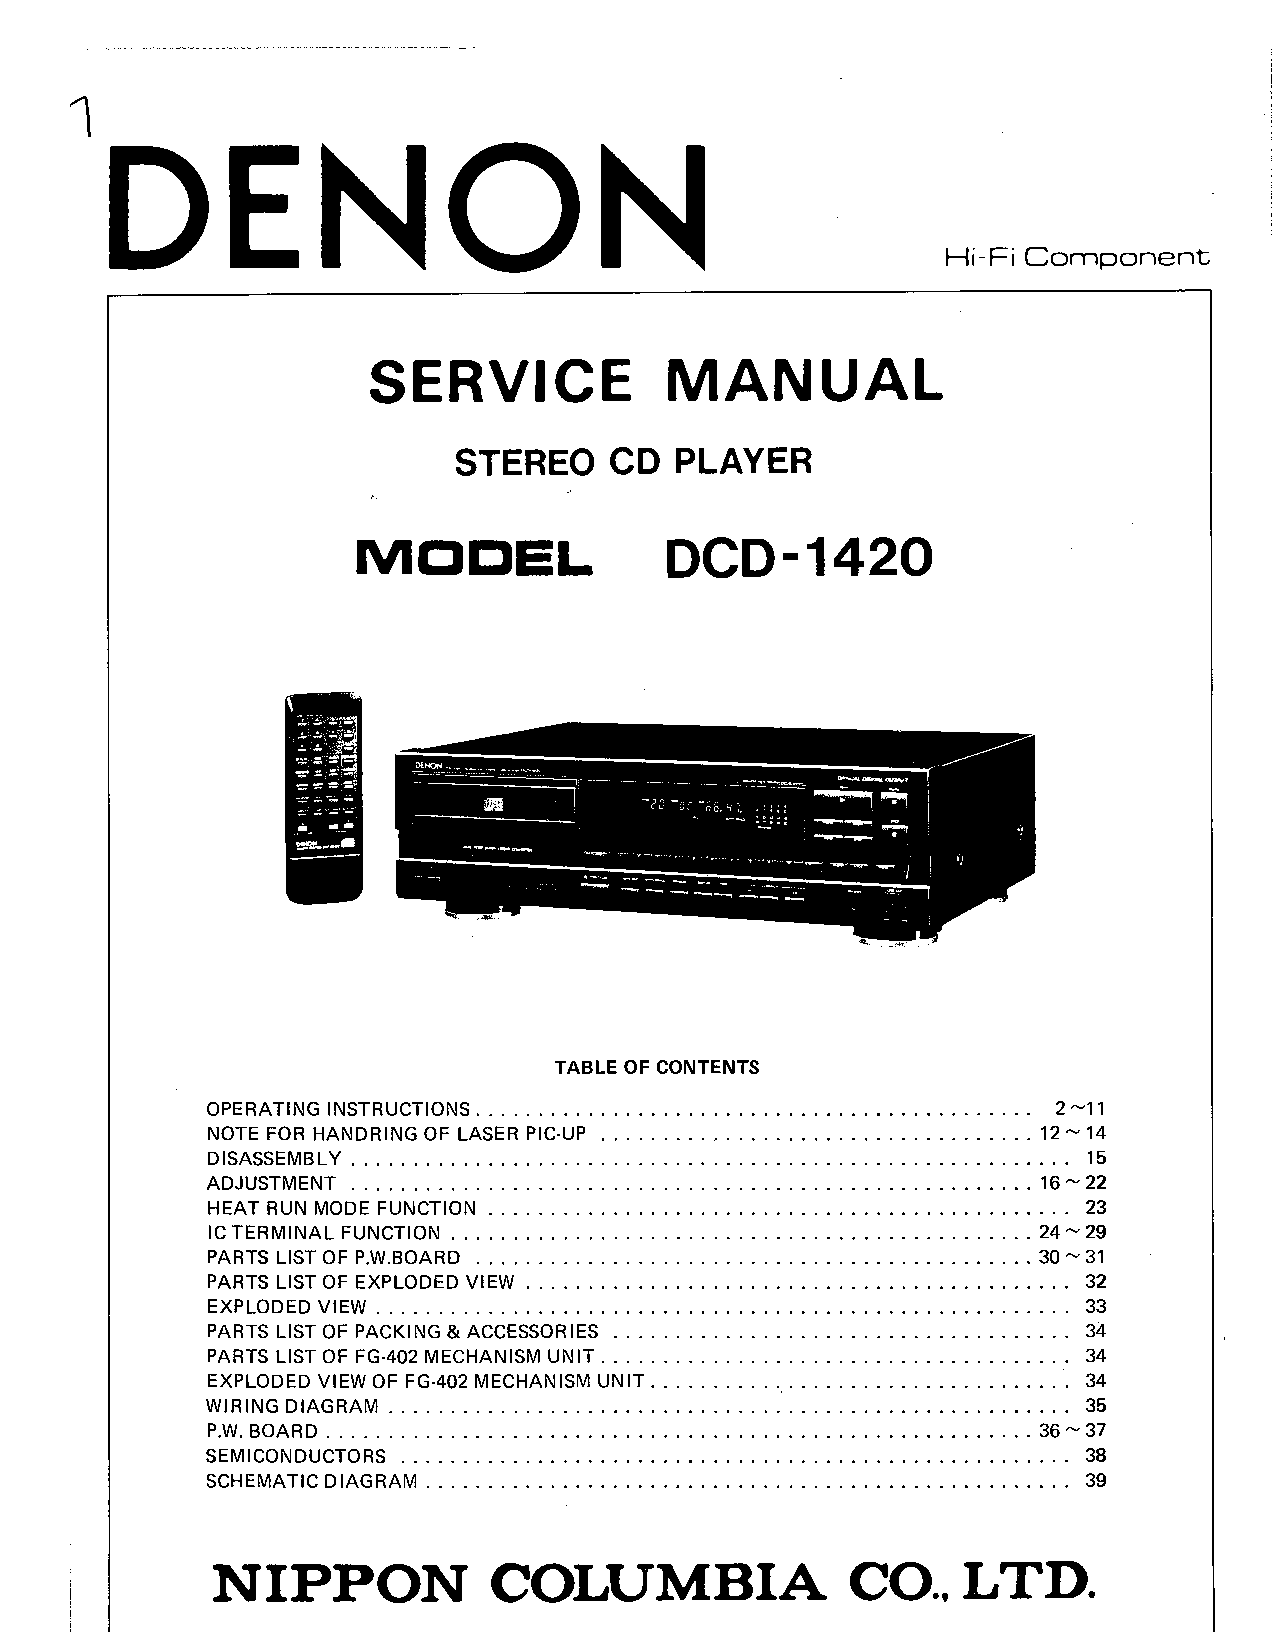 Denon DCD-1420 Service Manual